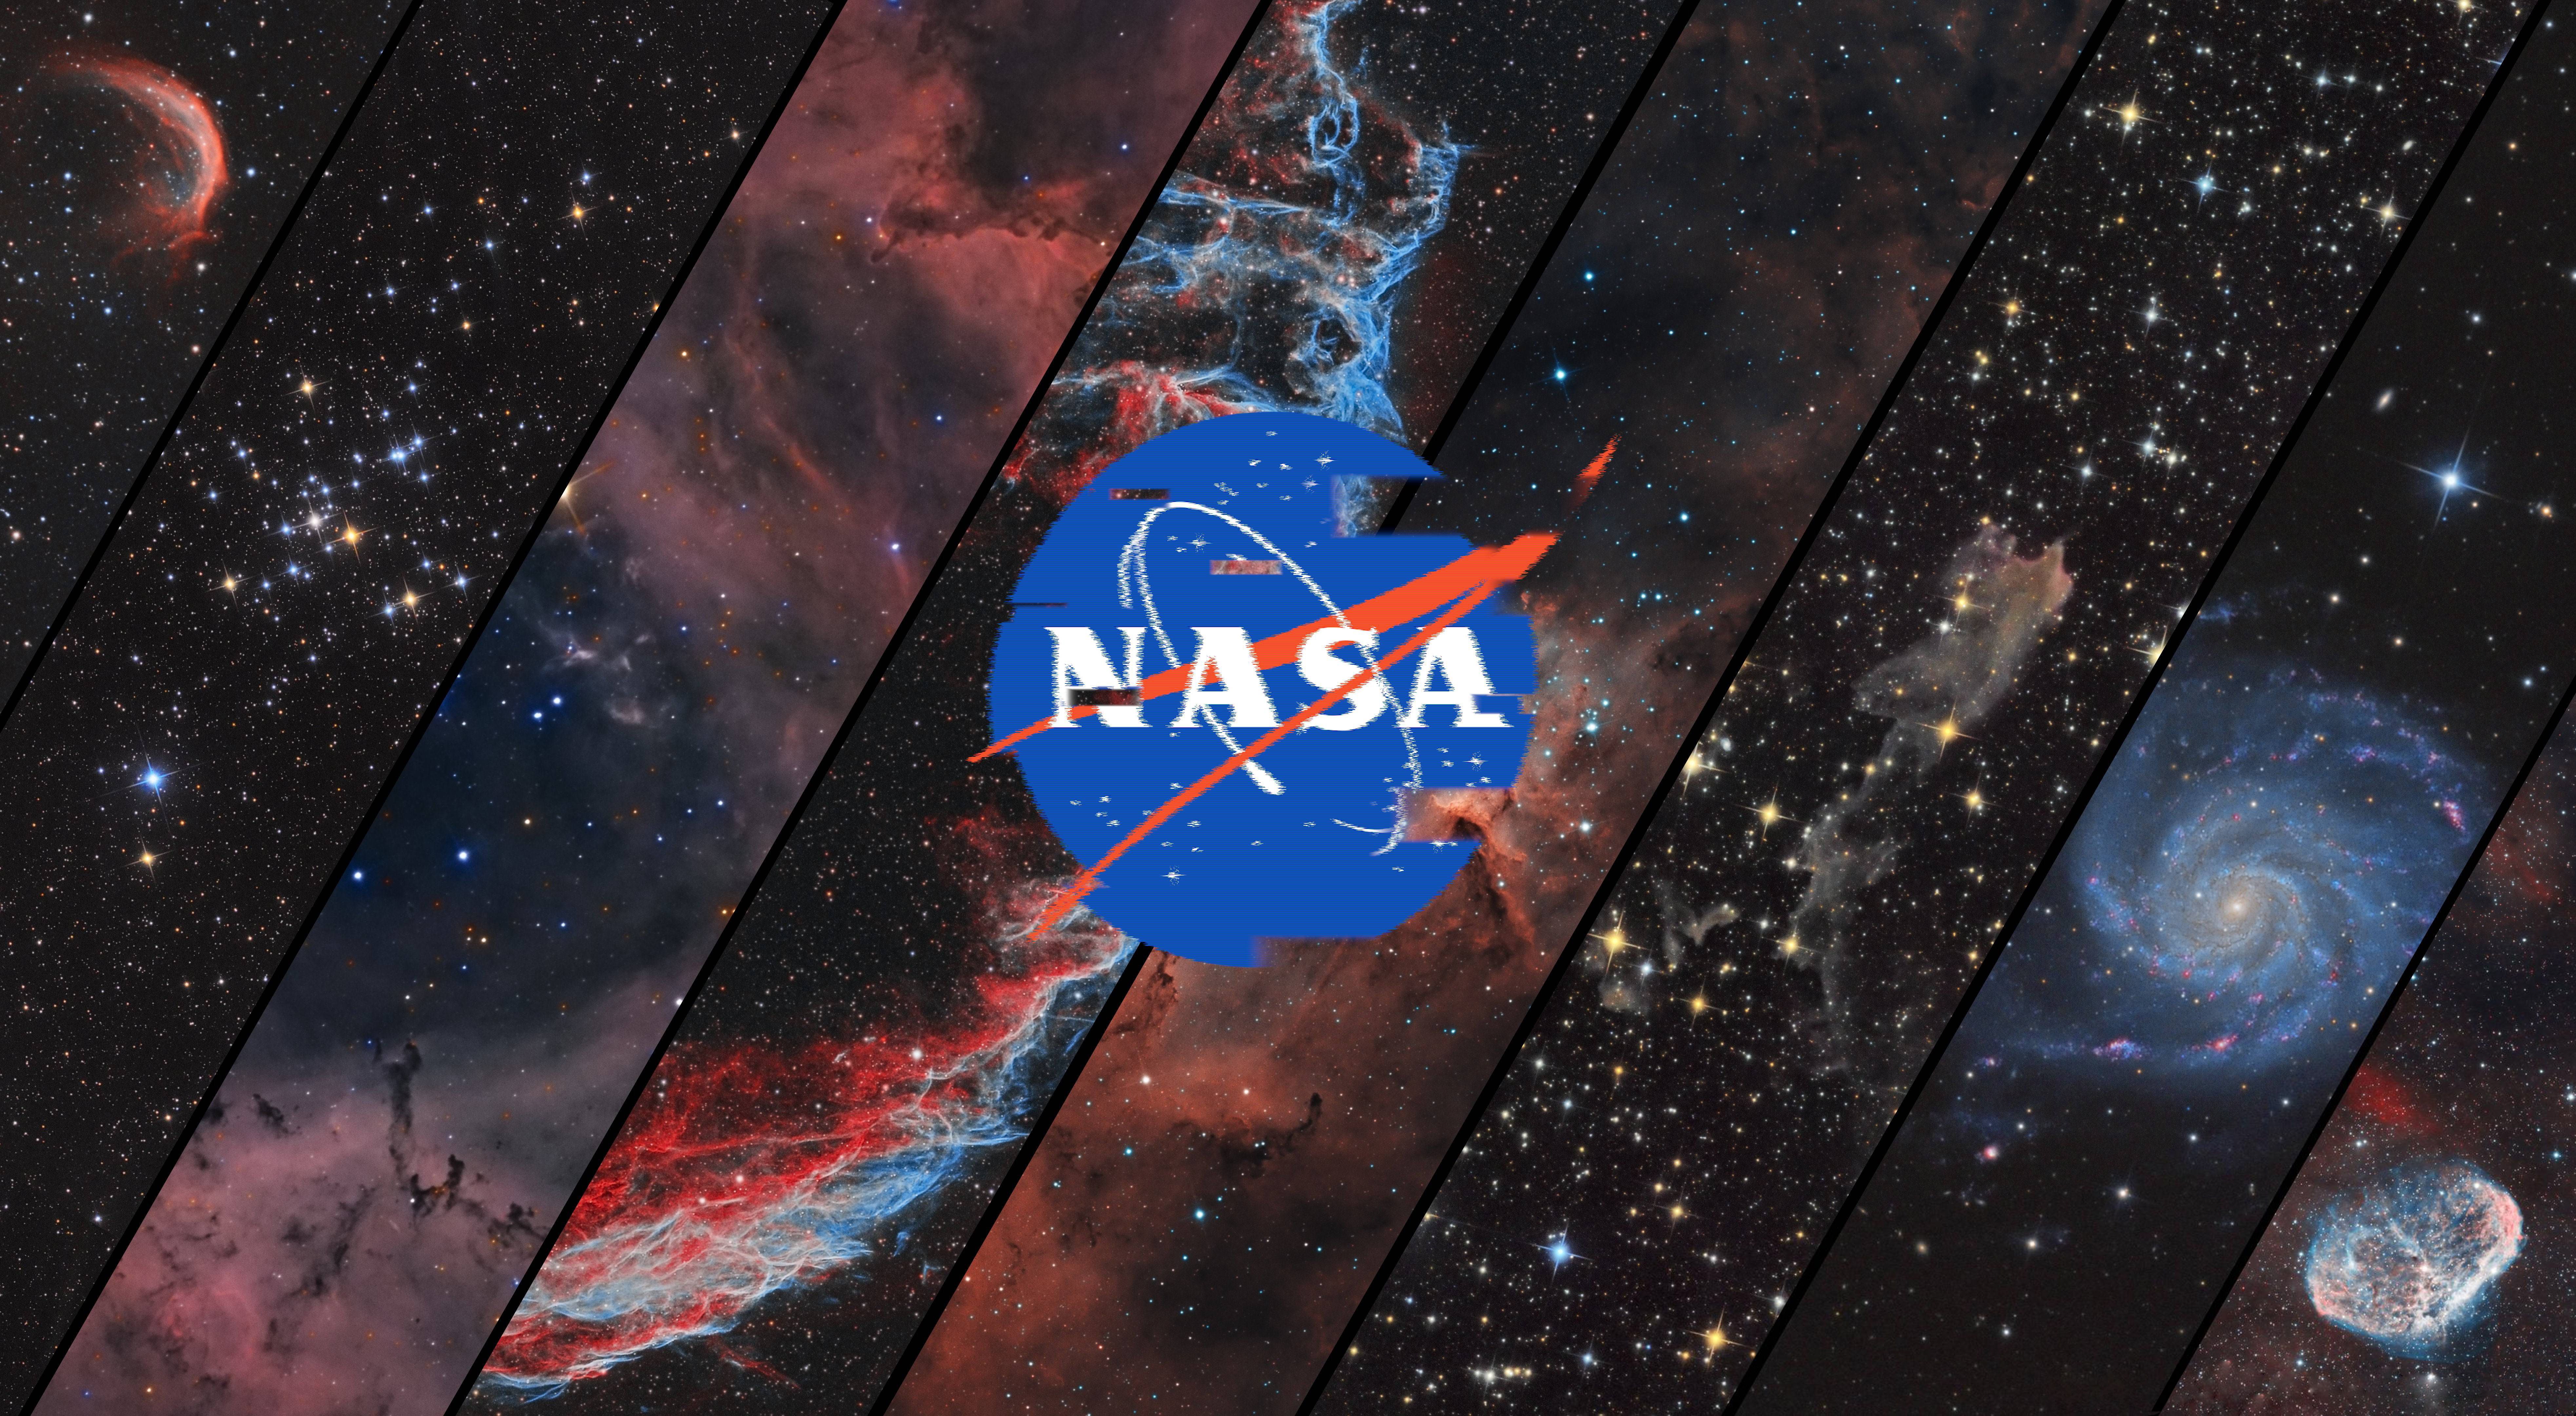 Glitched NASA 7860 x 4320 Nasa wallpaper Laptop wallpaper